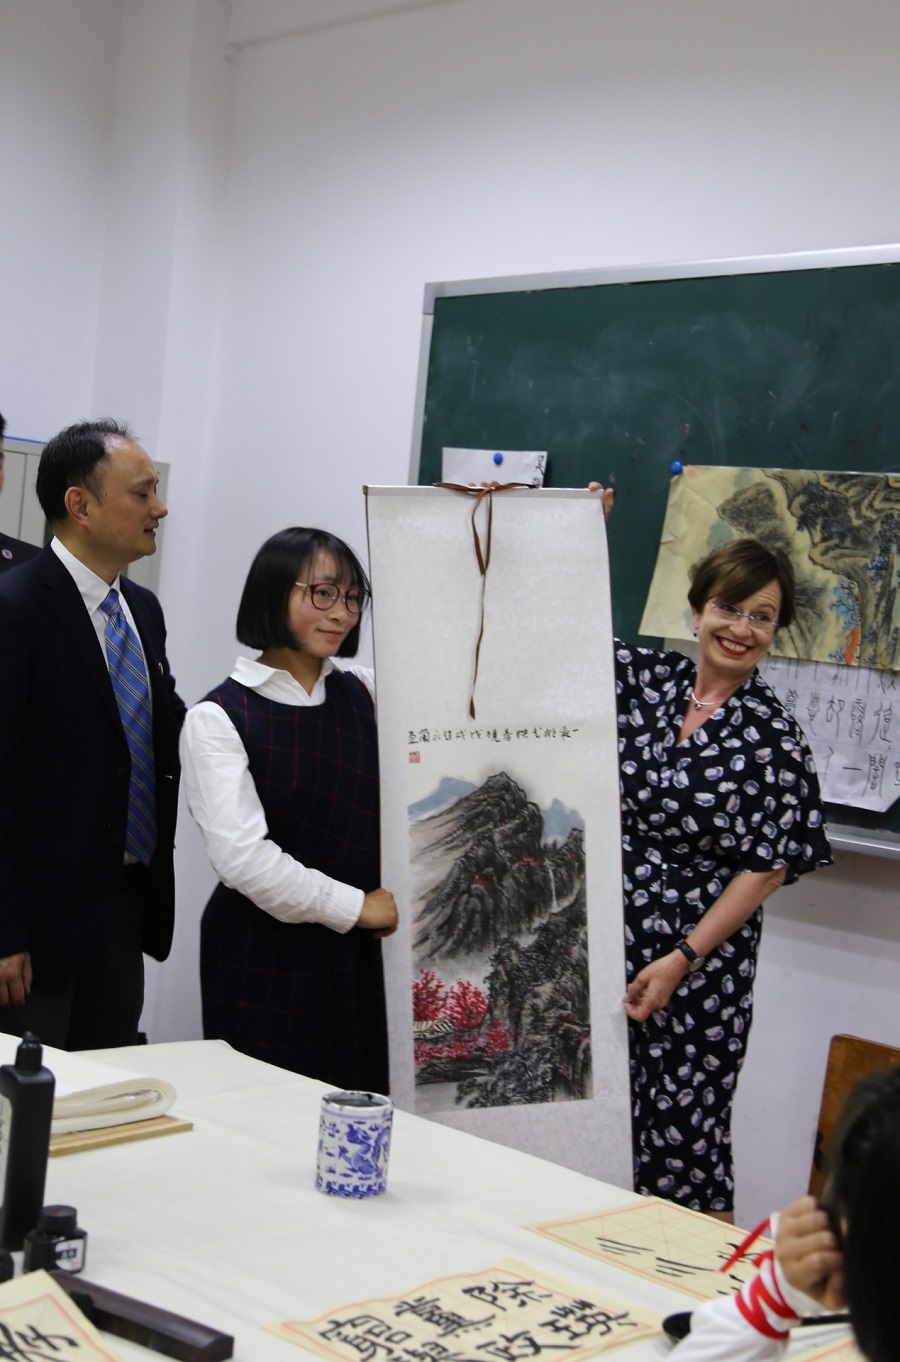 奥地利总统访川之旅 ——总统夫人访儿童村，燎原学子赠中国画